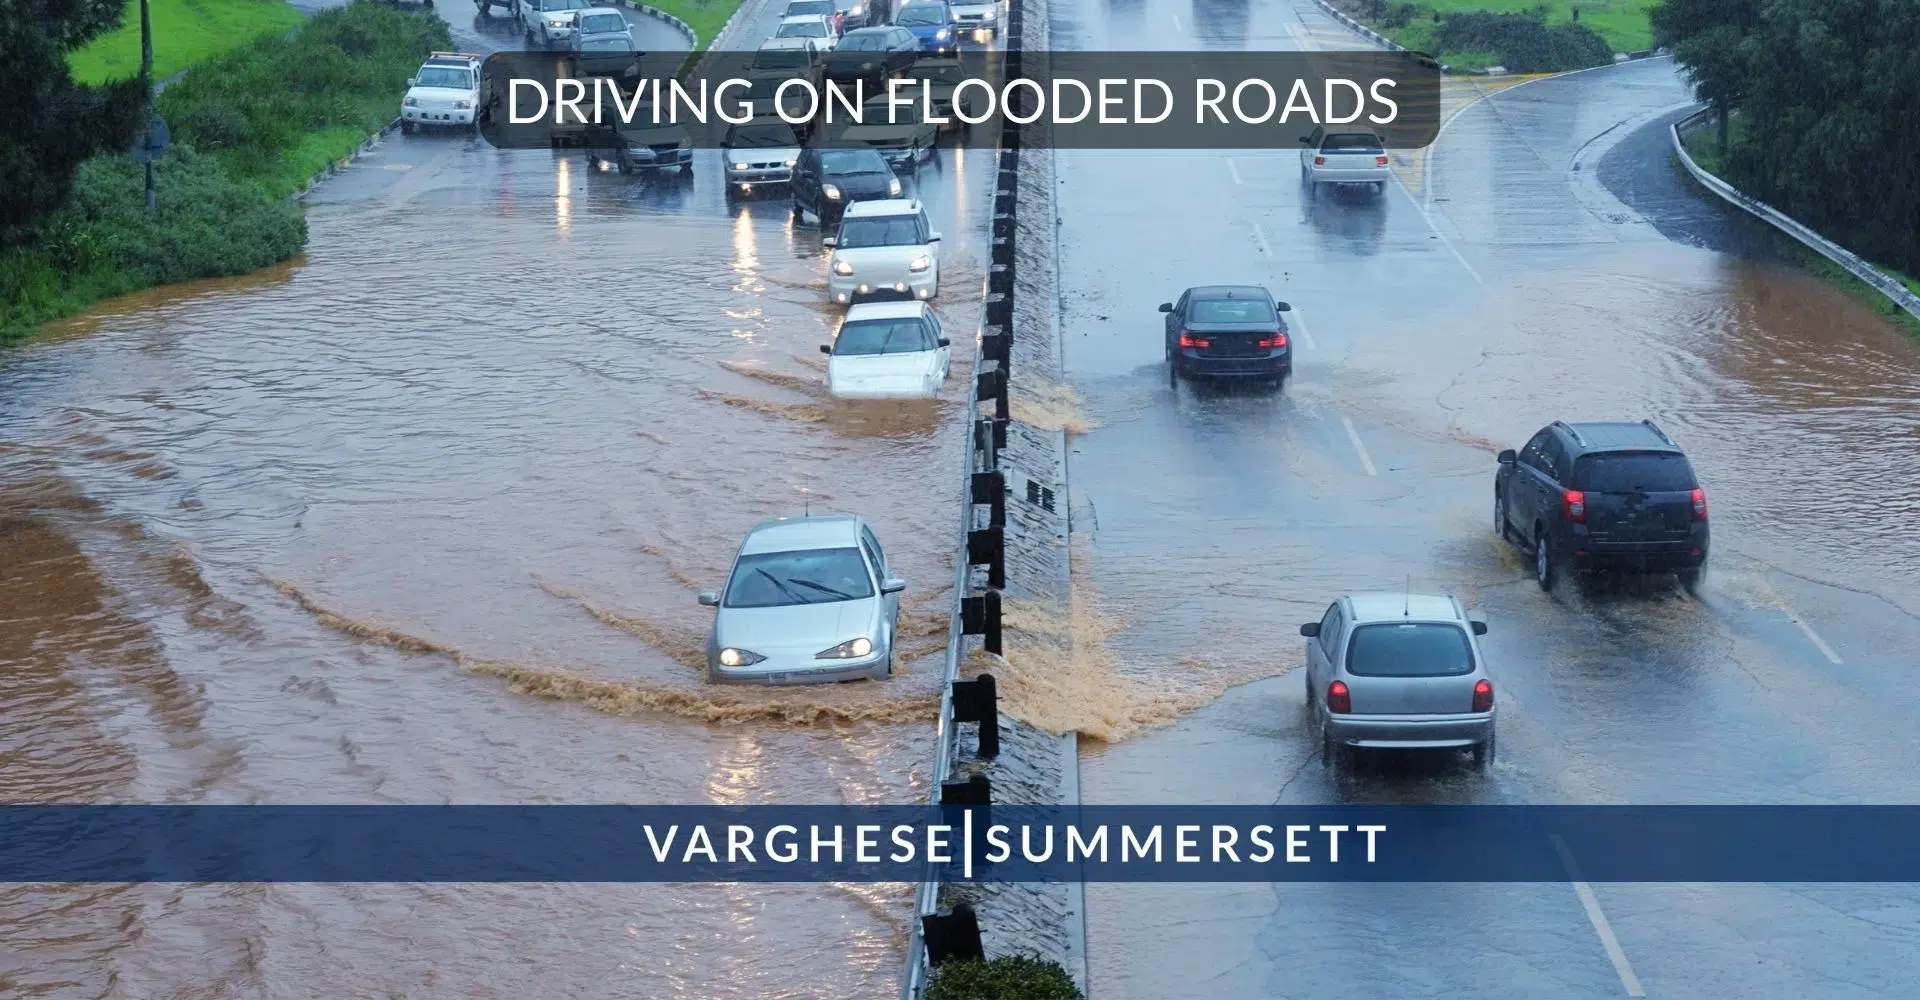 Conducir por carreteras inundadas